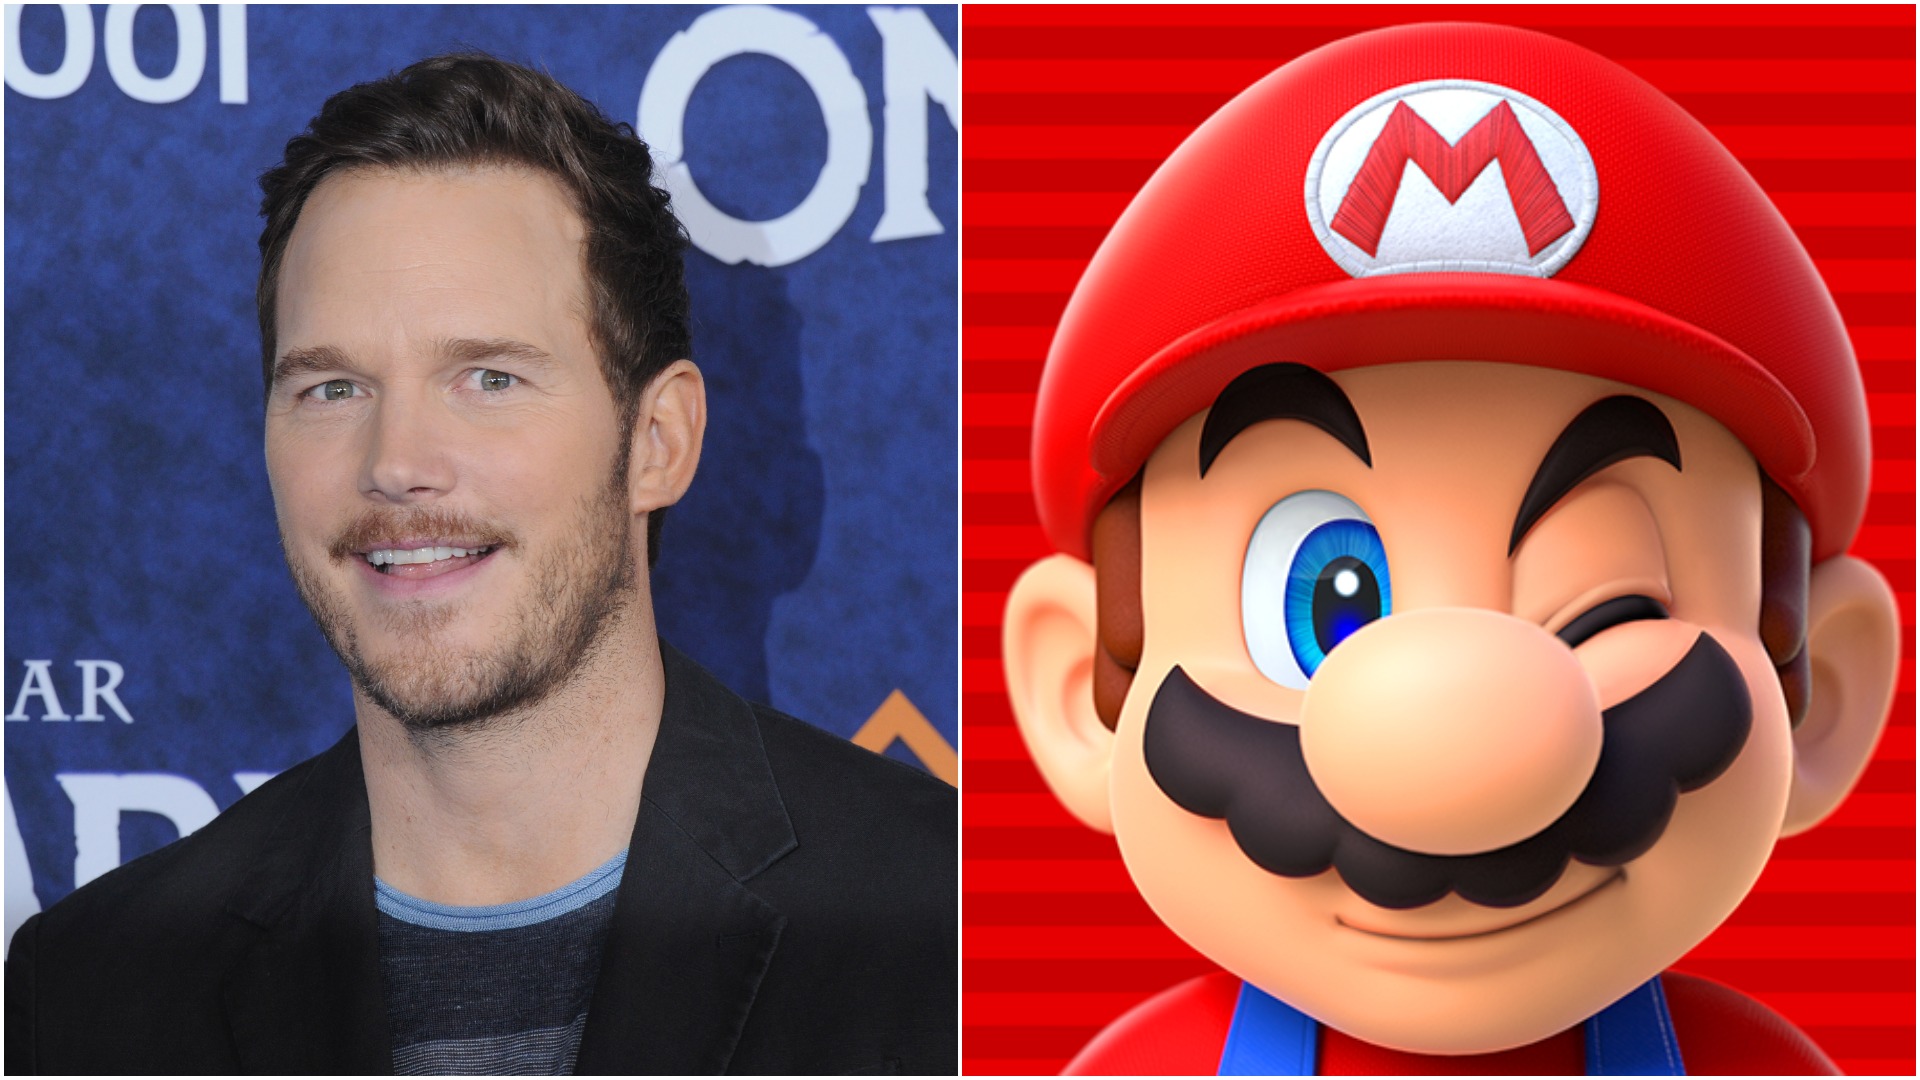 Super Mario Bros.' será lançado em 2022 com Chris Pratt e Jack Black